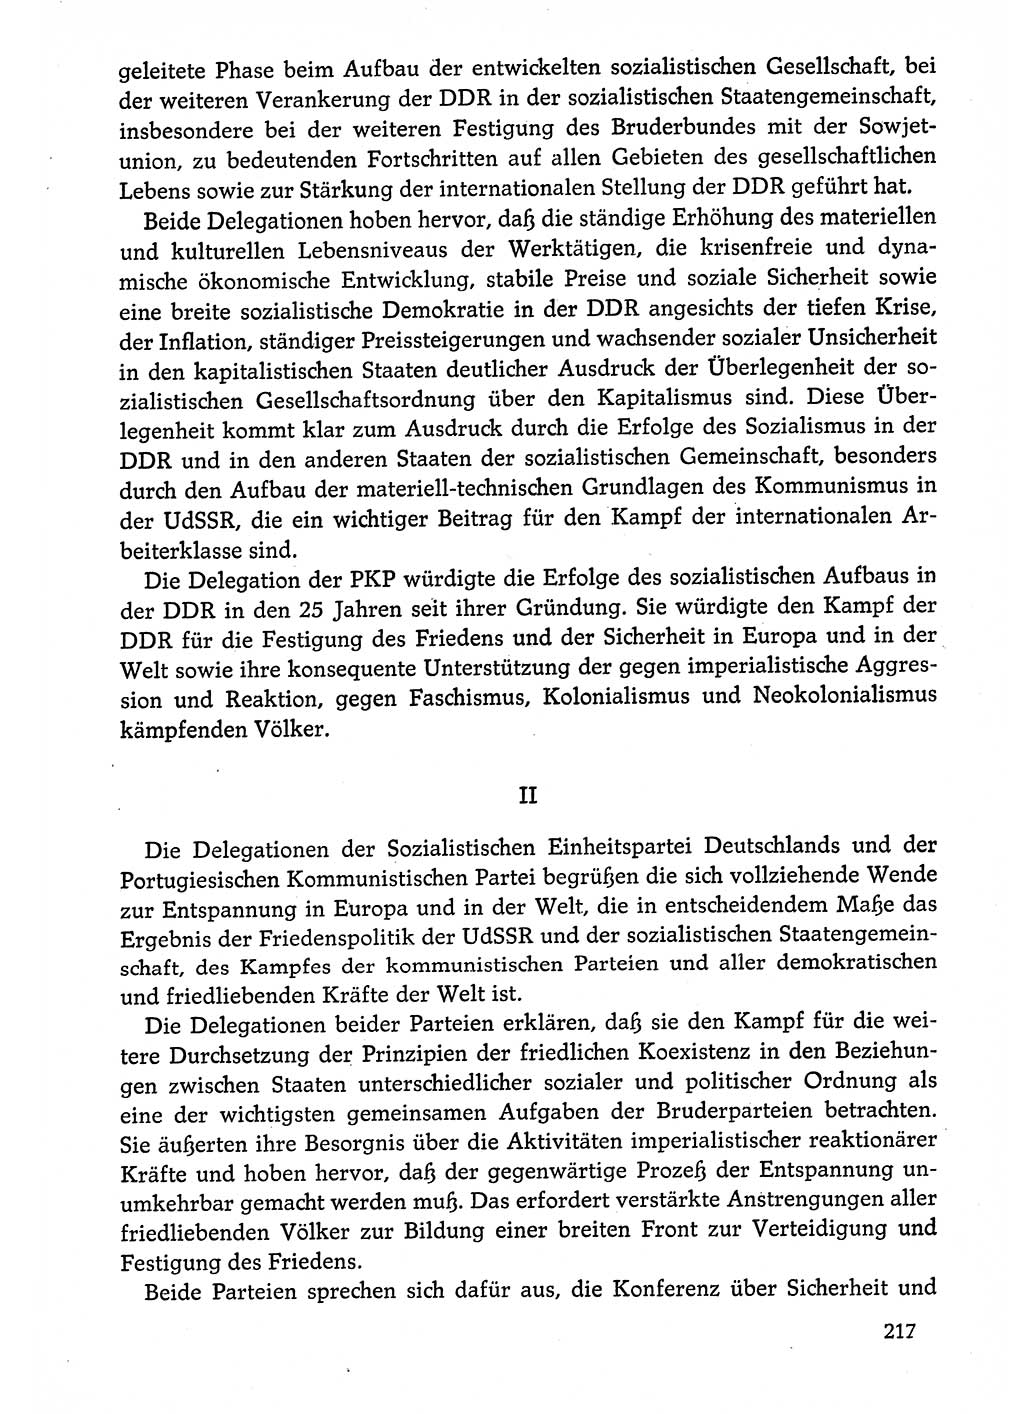 Dokumente der Sozialistischen Einheitspartei Deutschlands (SED) [Deutsche Demokratische Republik (DDR)] 1974-1975, Seite 217 (Dok. SED DDR 1978, Bd. ⅩⅤ, S. 217)